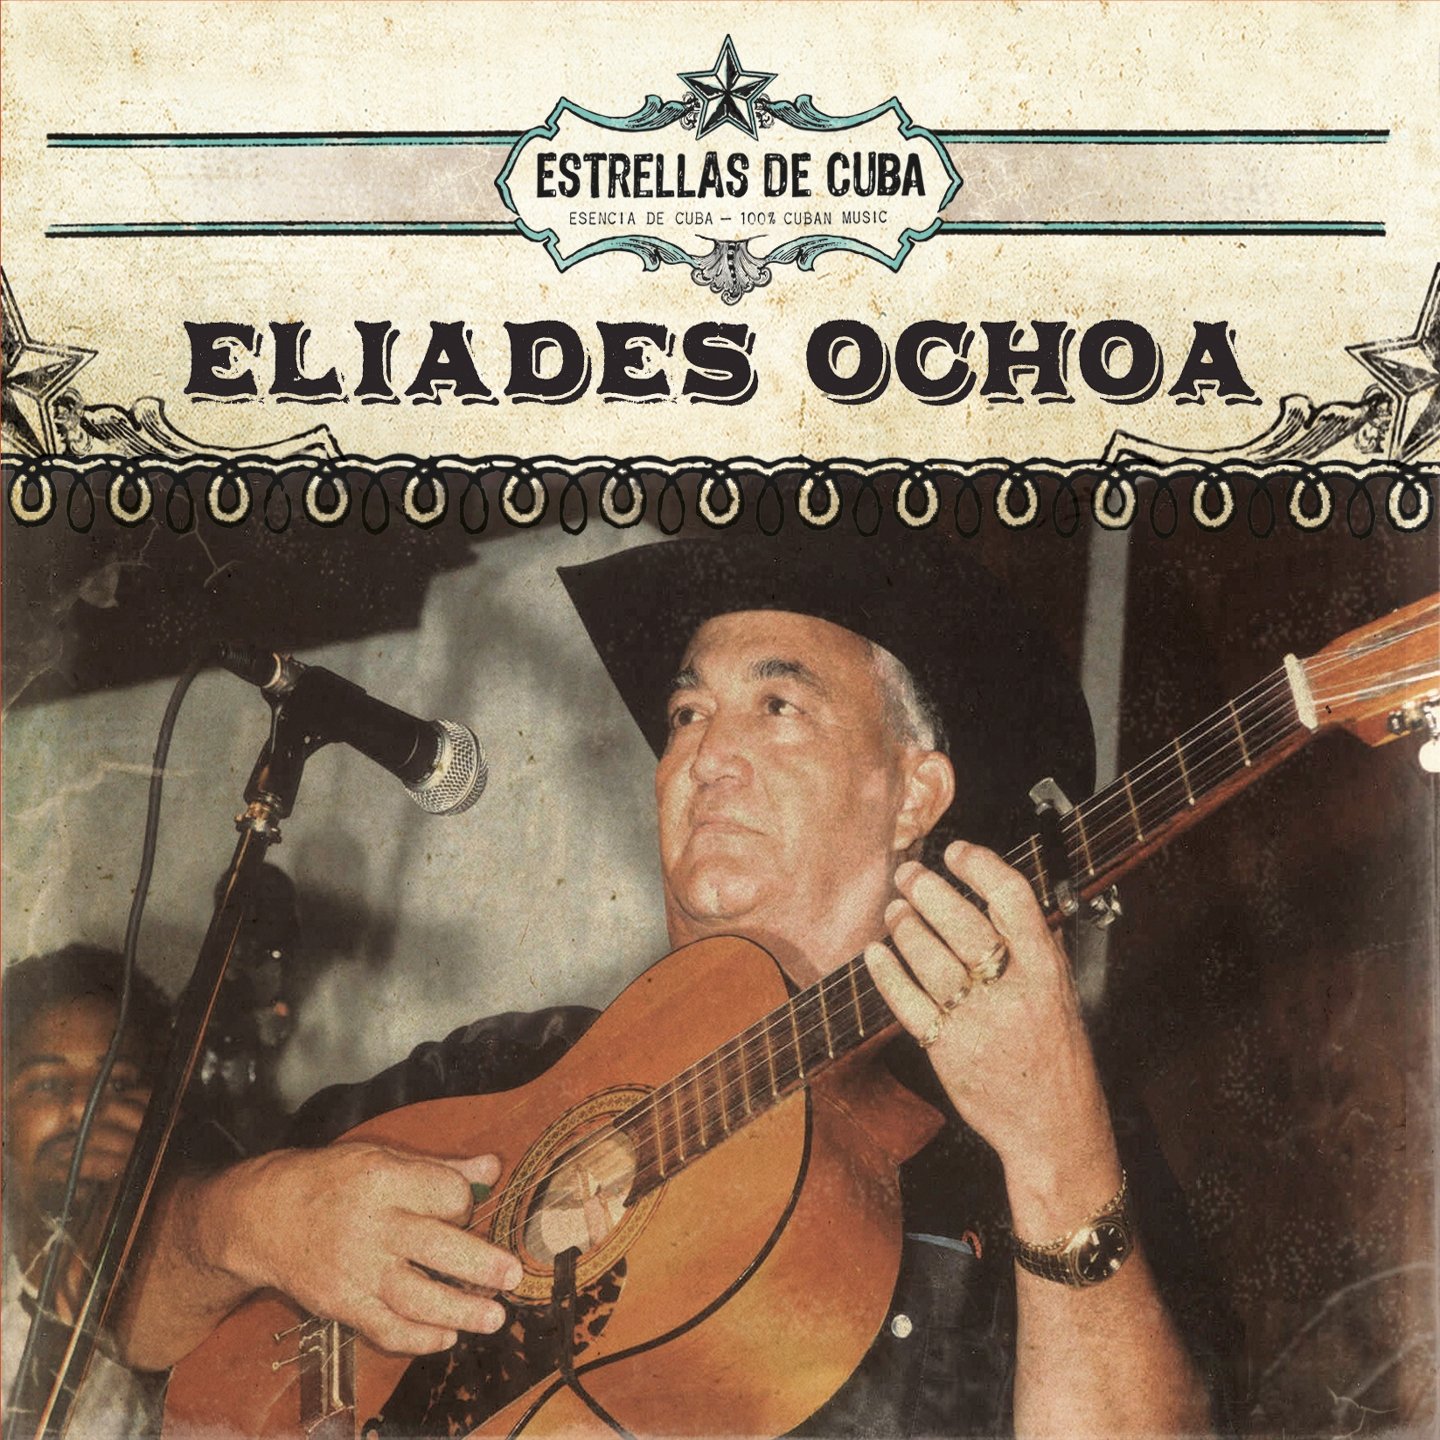 Resultado de imagen para eliades ochoa Estrellas de Cuba Eliades Ochoa (